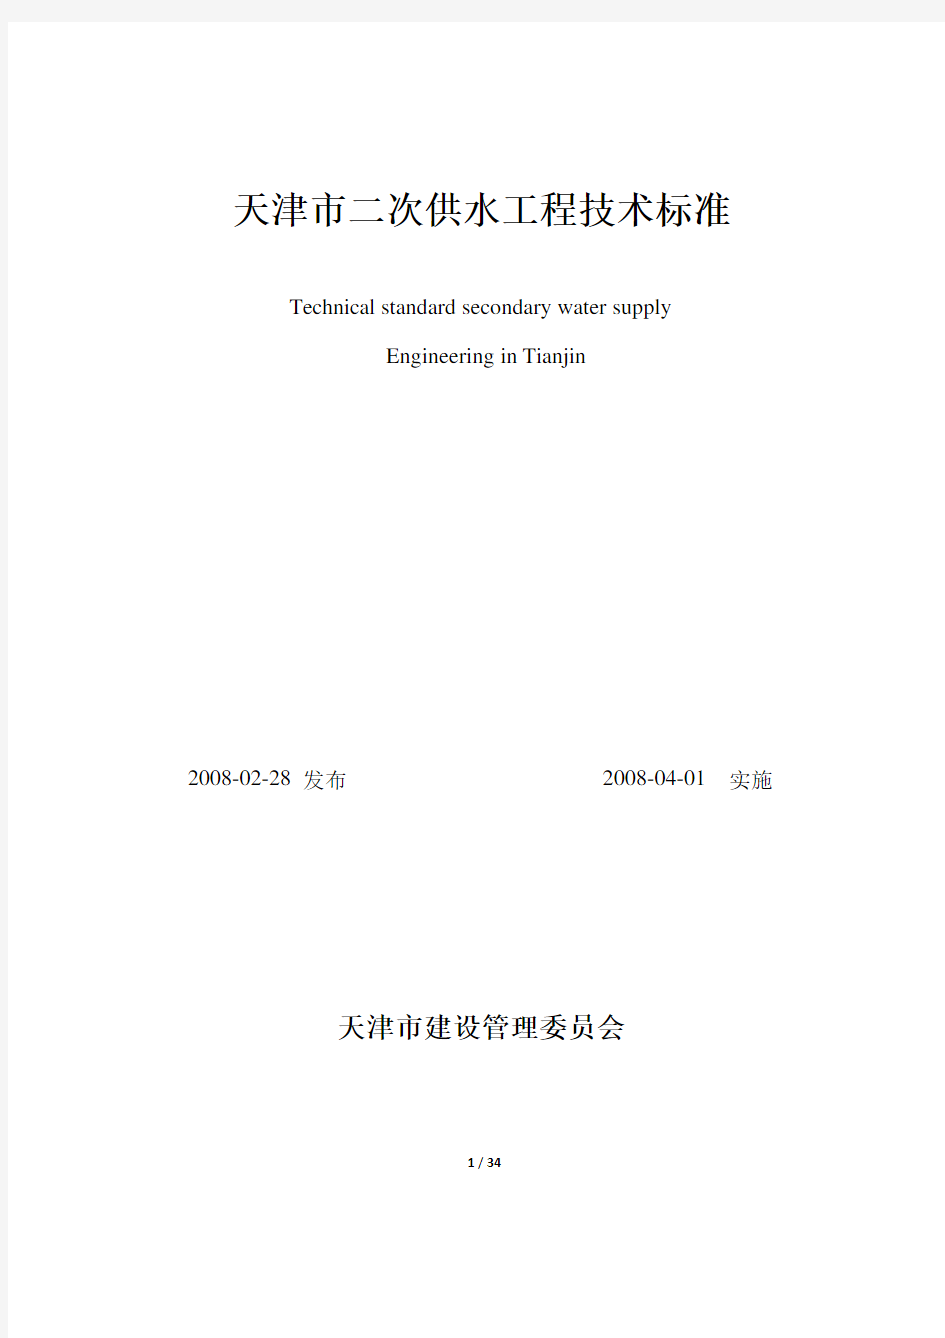 天津市二次供水工程技术标准(新版)